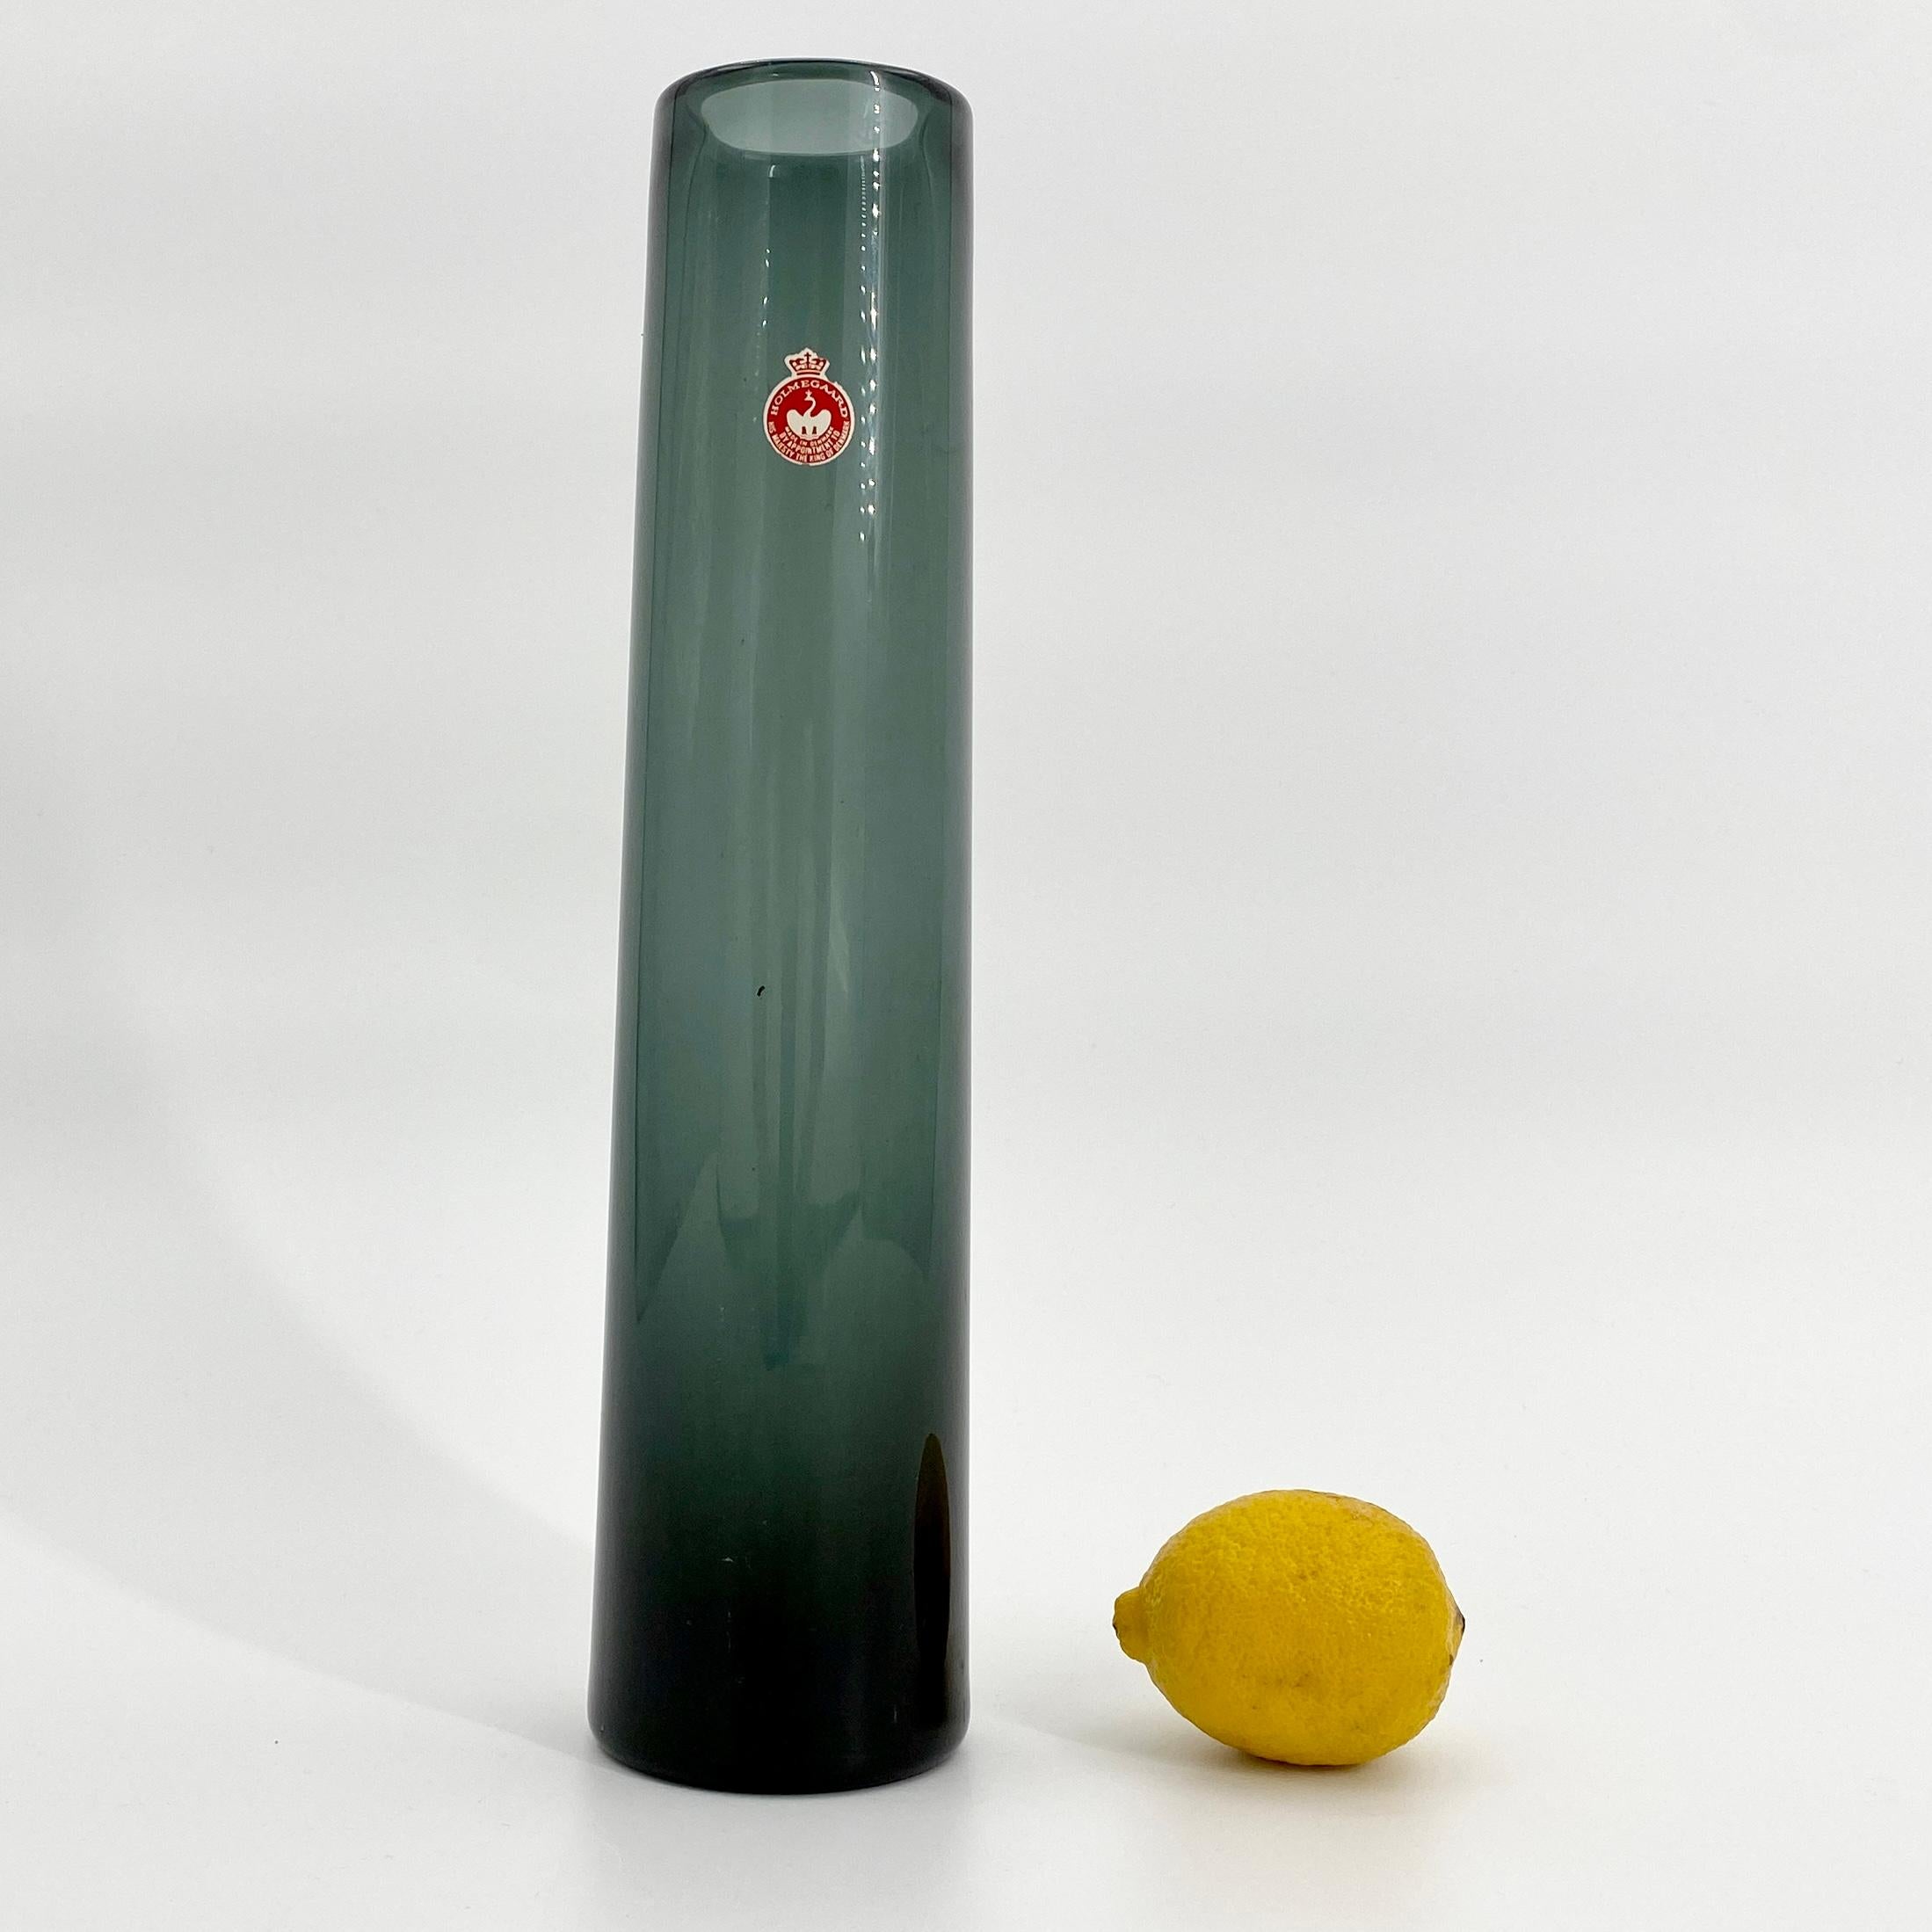 Eine hohe und fein gearbeitete mundgeblasene grüne Glasvase von Holmegaard. Die Vase ist von Holmegaard und Lütken signiert und gekennzeichnet. Form und Farbe der Vase lassen sich am besten als eine sich verjüngende Form mit hellgrauem und grünem